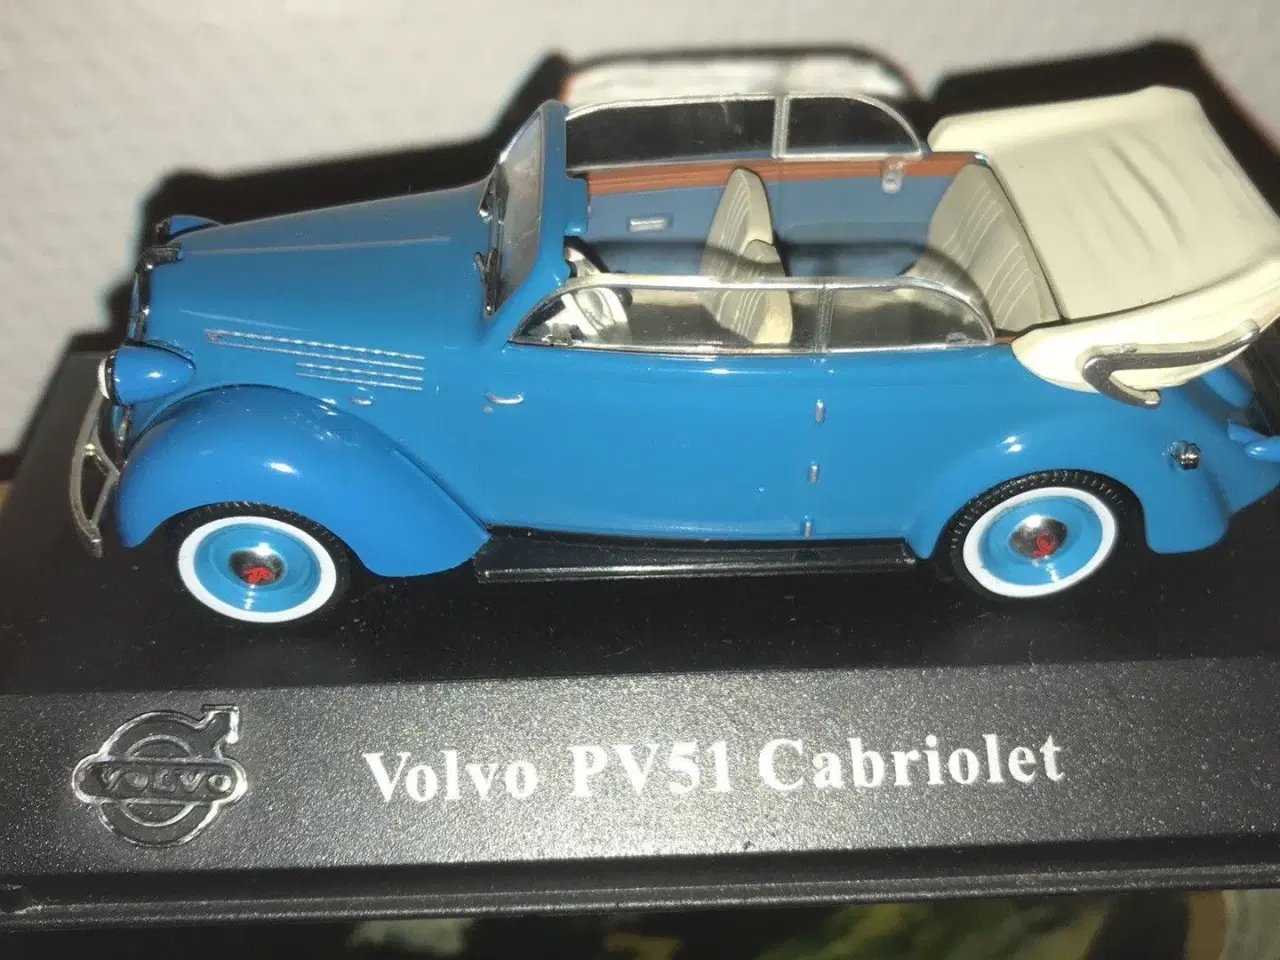 Billede 1 - Volvo pv51 cabriolet i 1/43